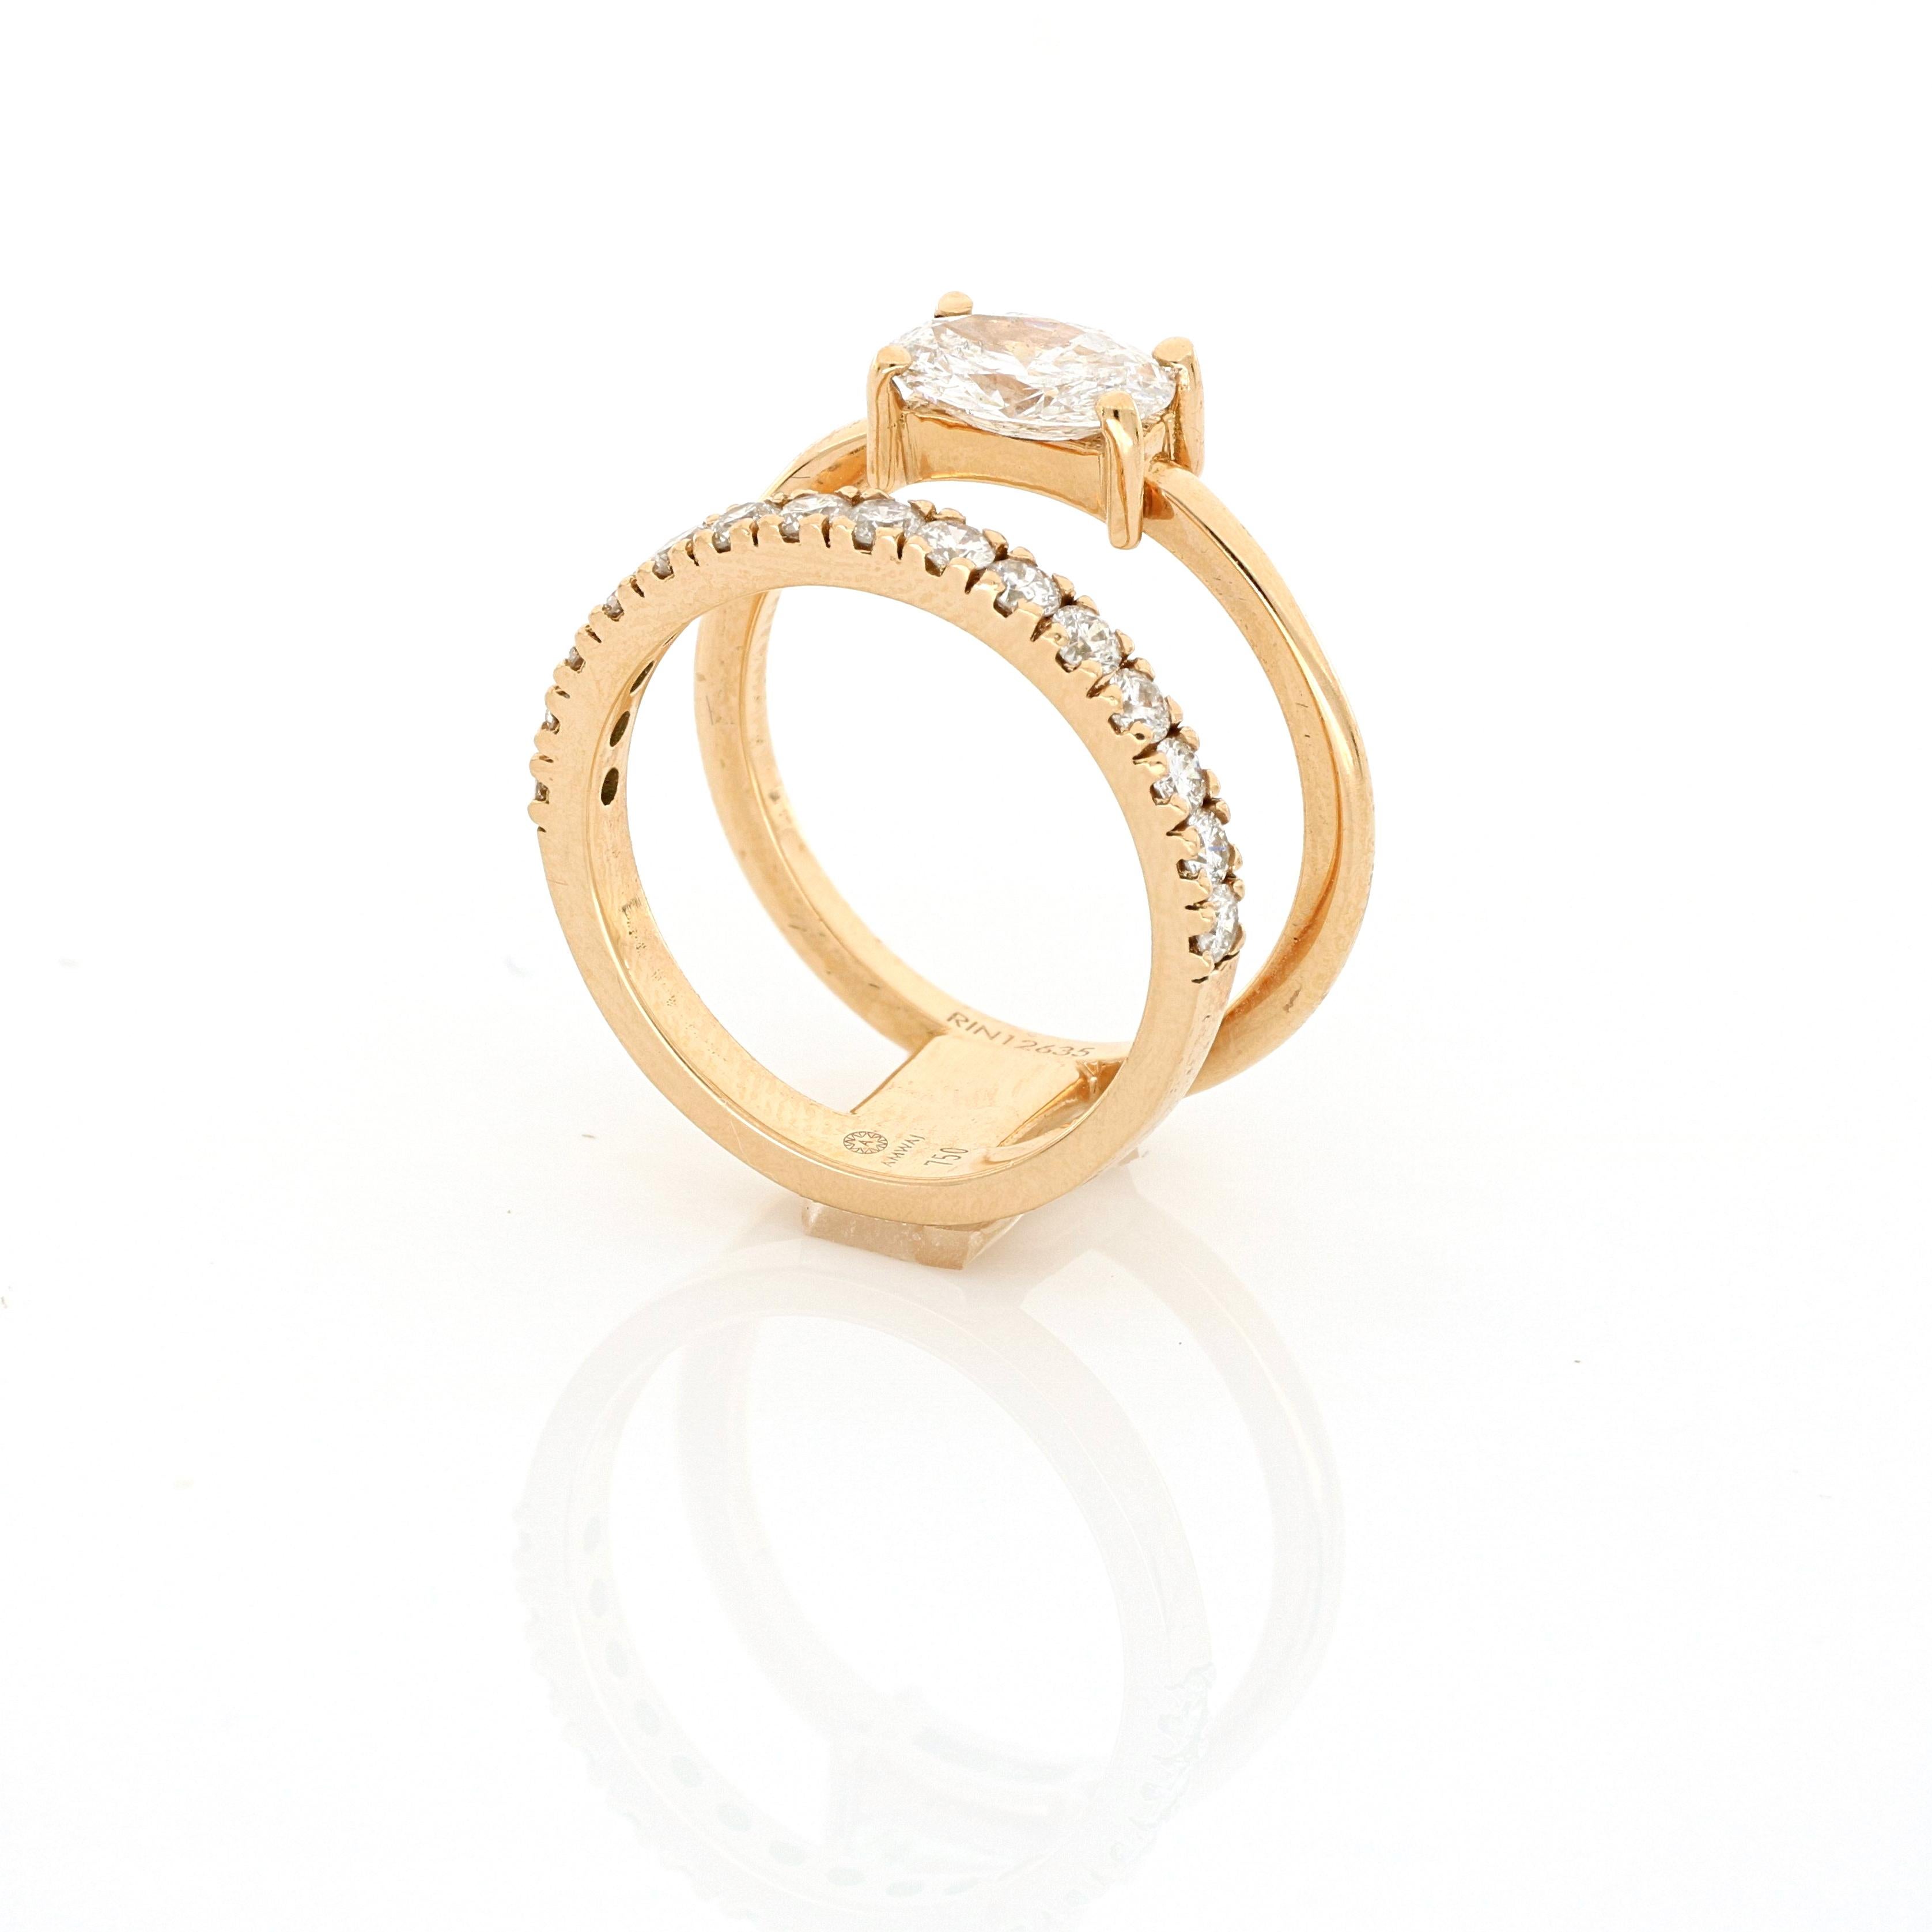 Une célébration de l'esthétique du design signé Amwaj, une bague en diamant délicate mais sculpturale s'arrondit autour du doigt pour embrasser un diamant ovale parfait de 1,51 carat dans cette bague en or rose d'une élégance unique opposée à de